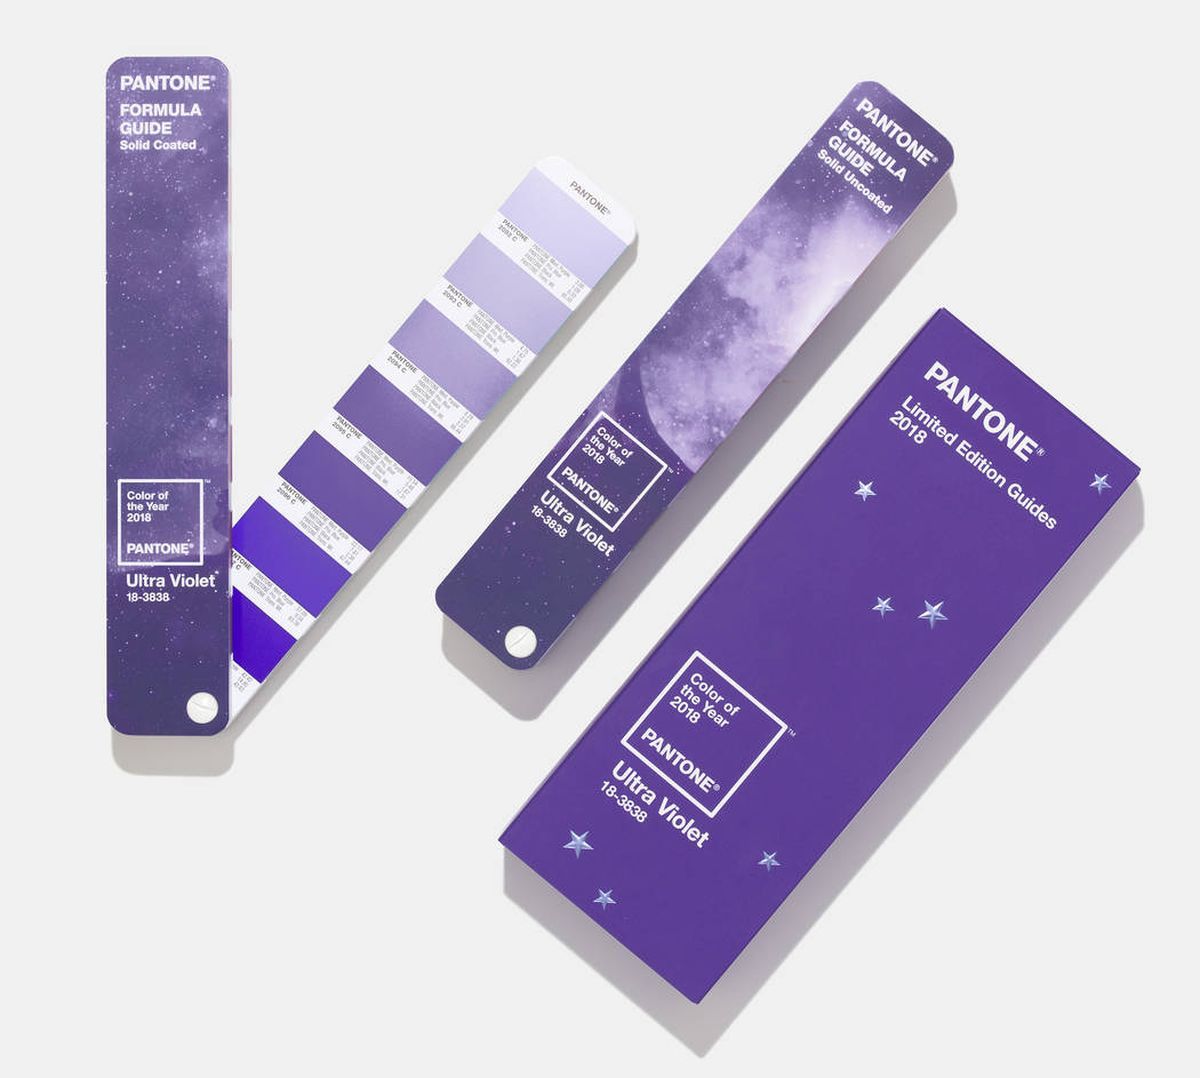 Kwitten Pantone hat Ultra Violet zur Farbe des Jahres 2018 gewählt.